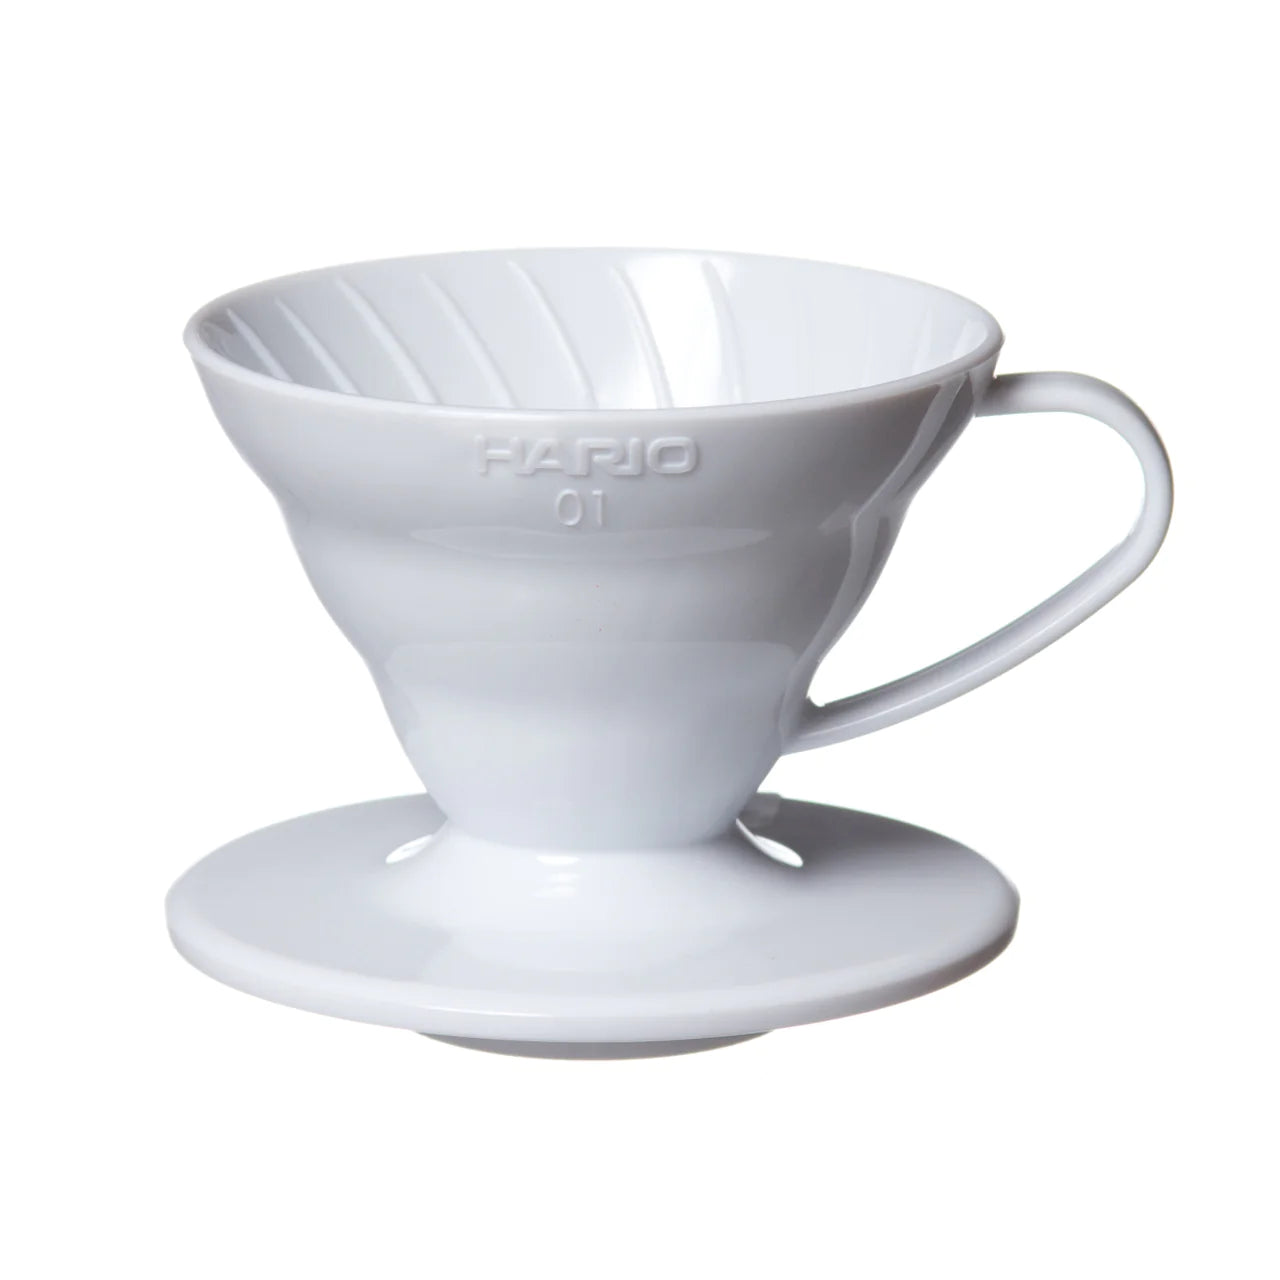 Hario V60 Plastic Coffee Dripper 01 - White